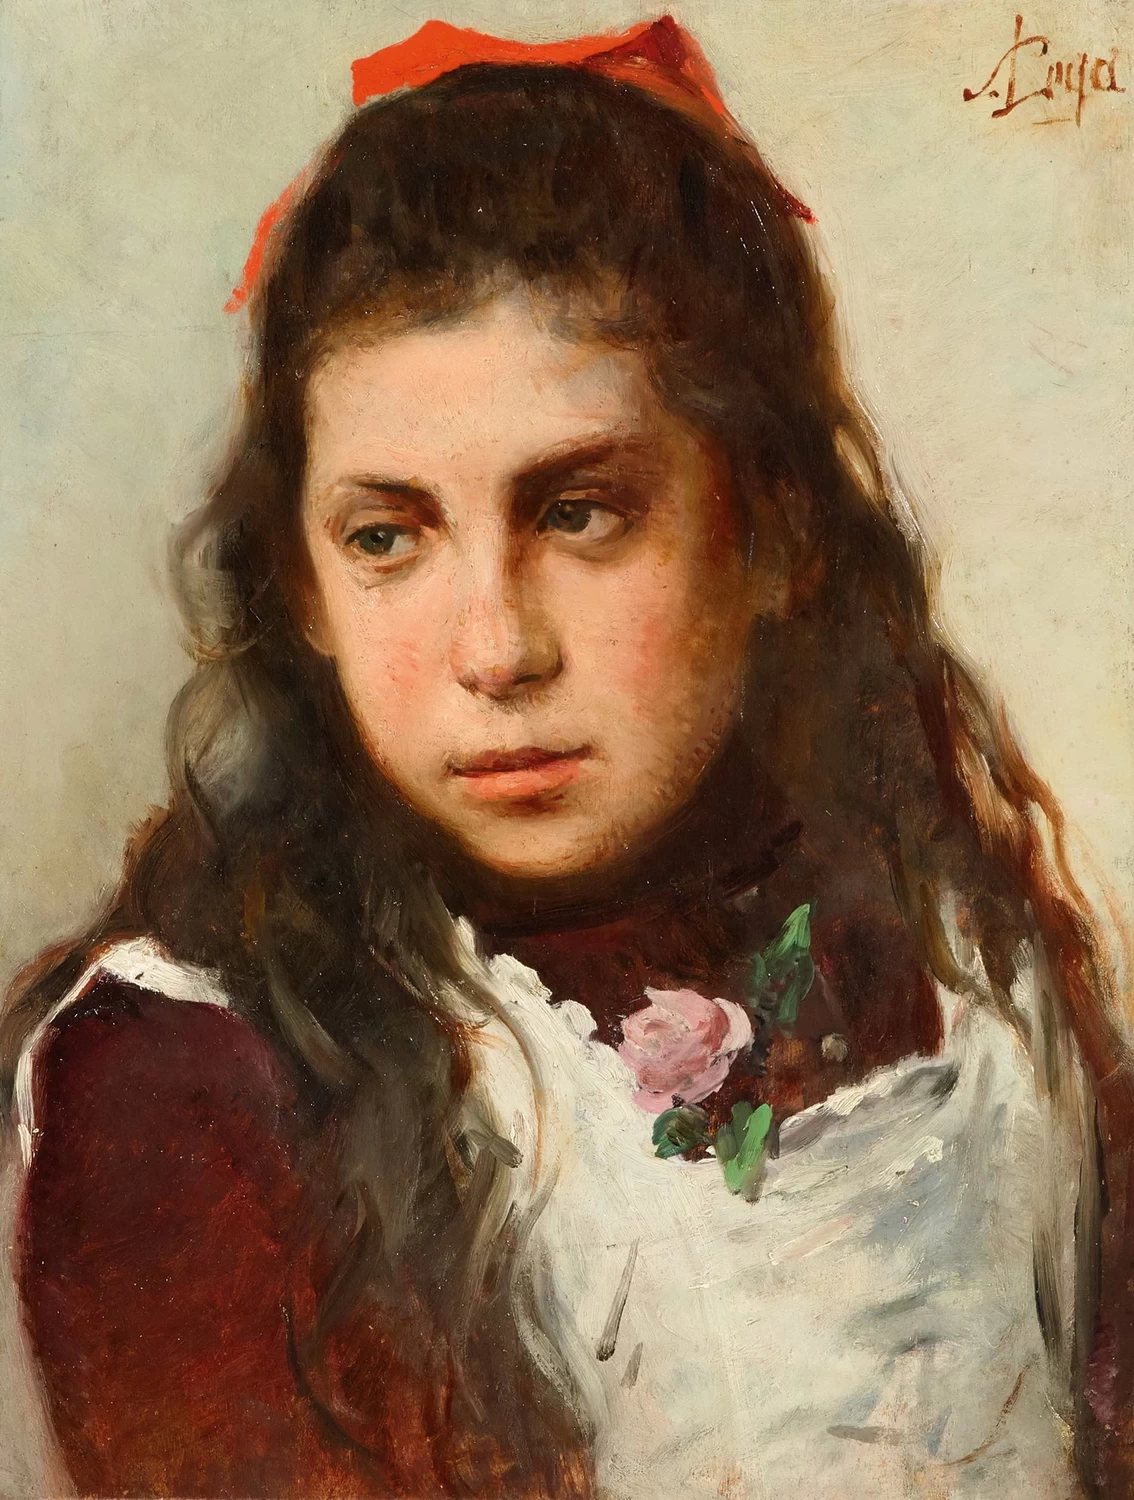 186-Ritratto di giovane ragazza con fiocco rosso 